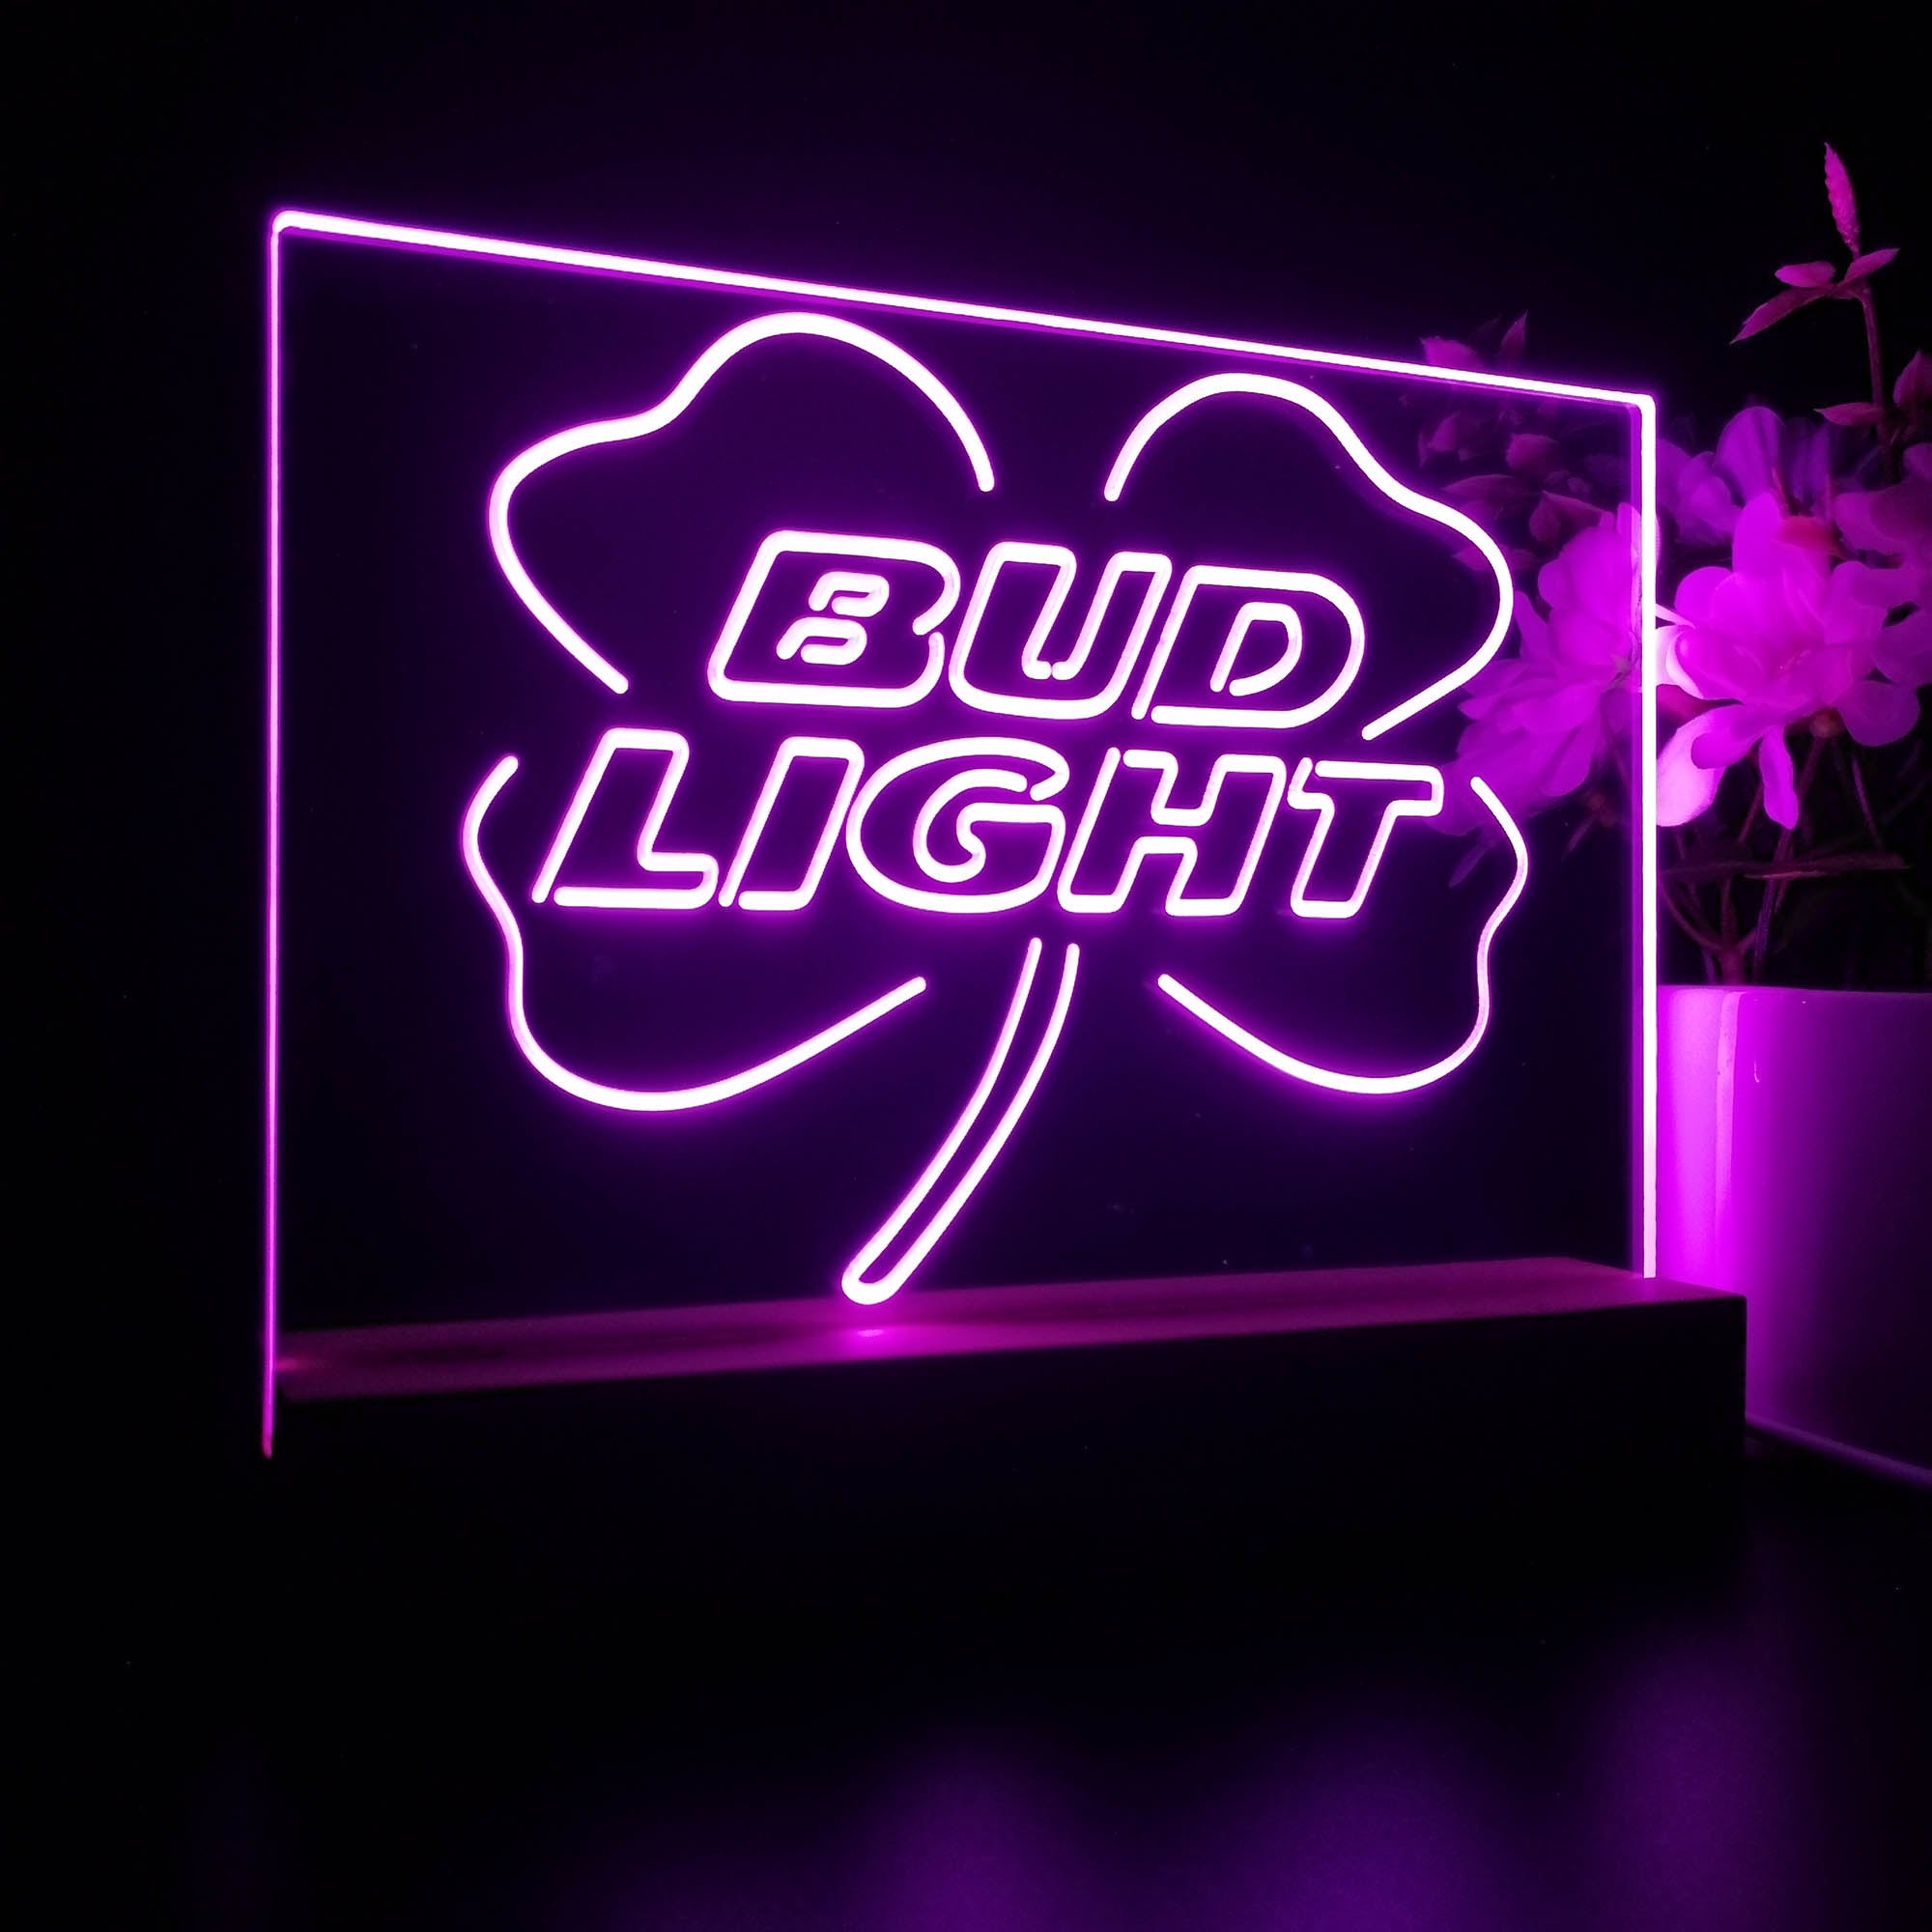 Bud Lights Clover Beer Night Light LED Sign